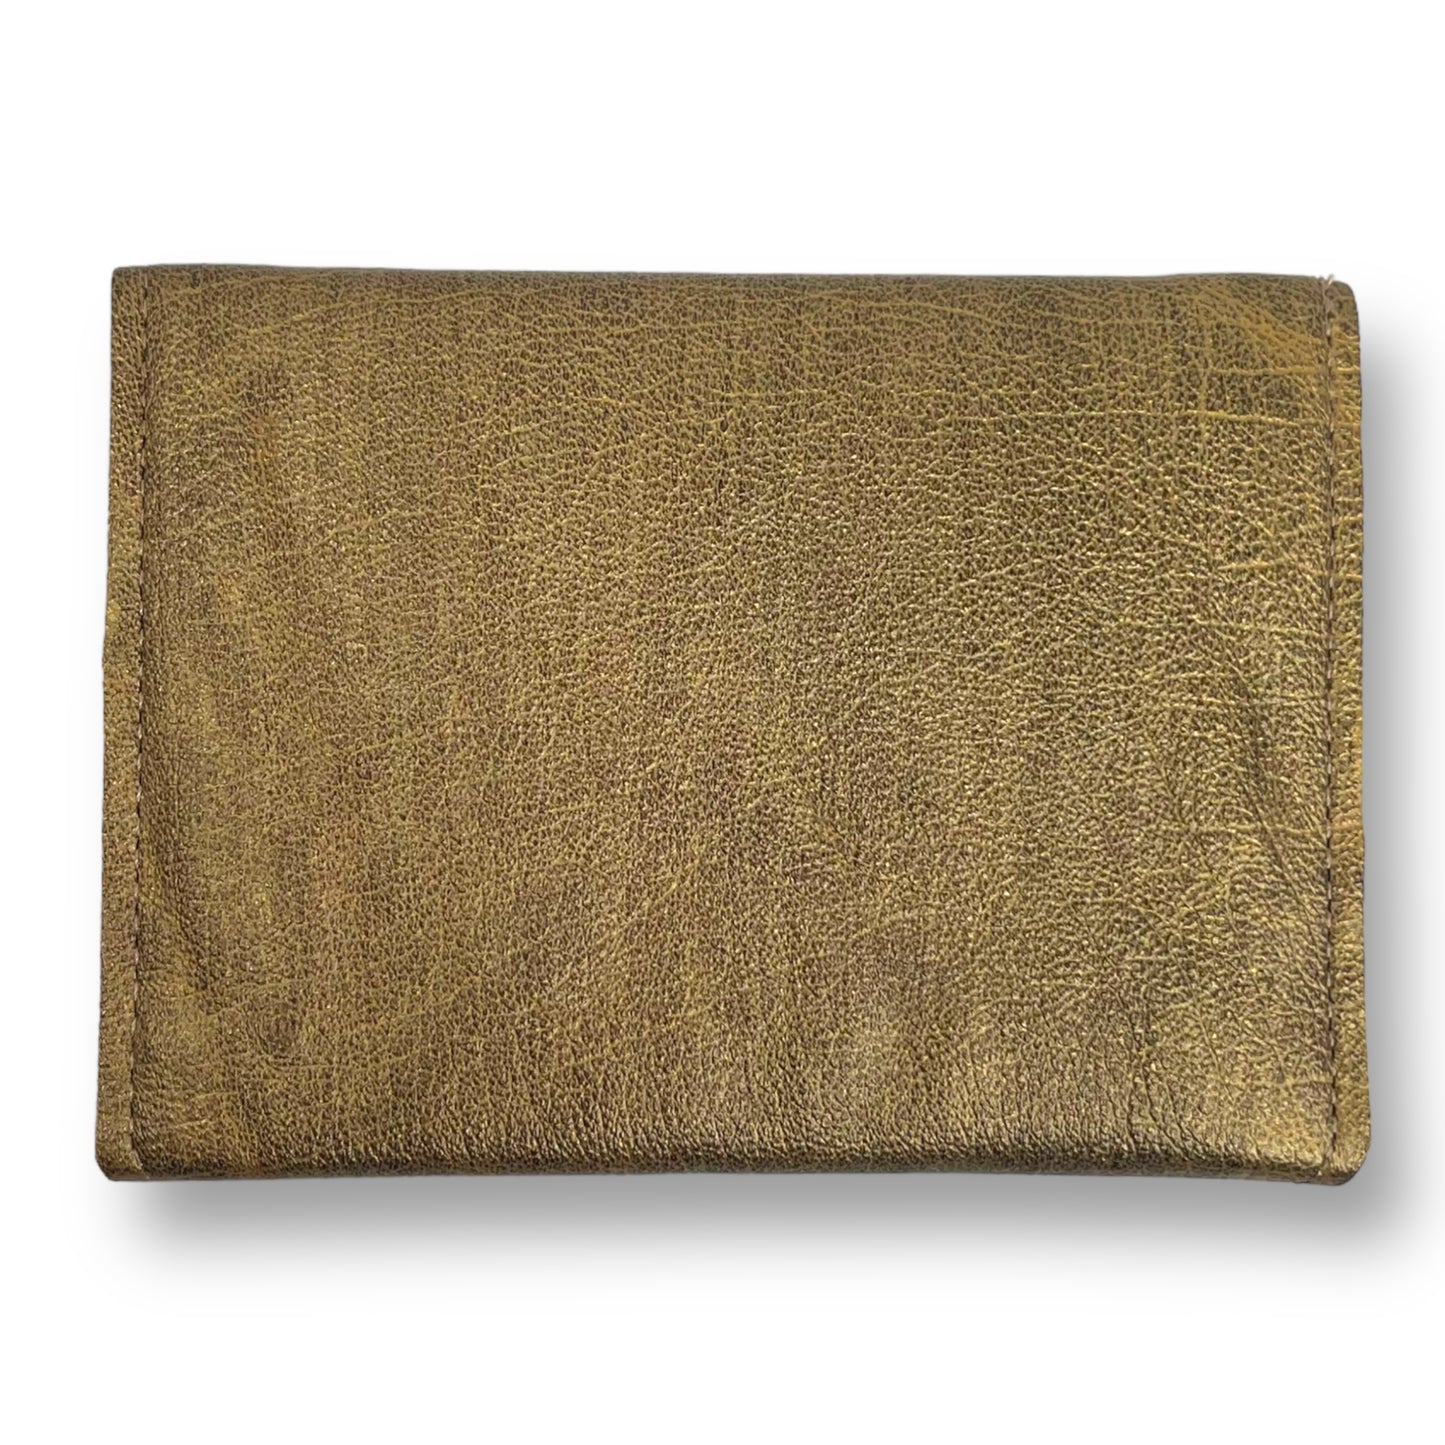 Gold Floral Envelope Leather Wallet